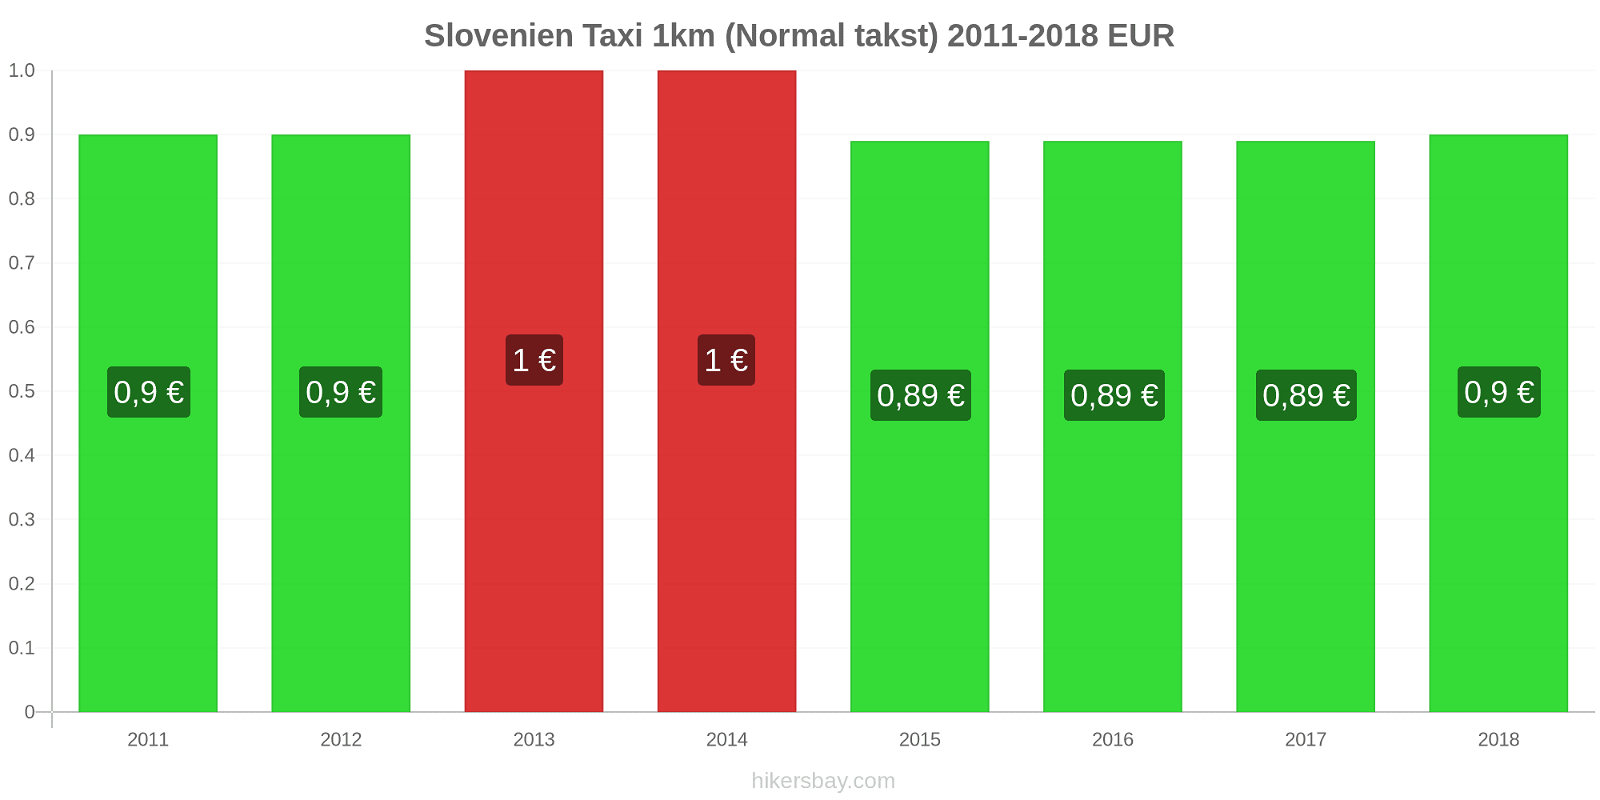 Slovenien prisændringer Taxi 1km (normal takst) hikersbay.com